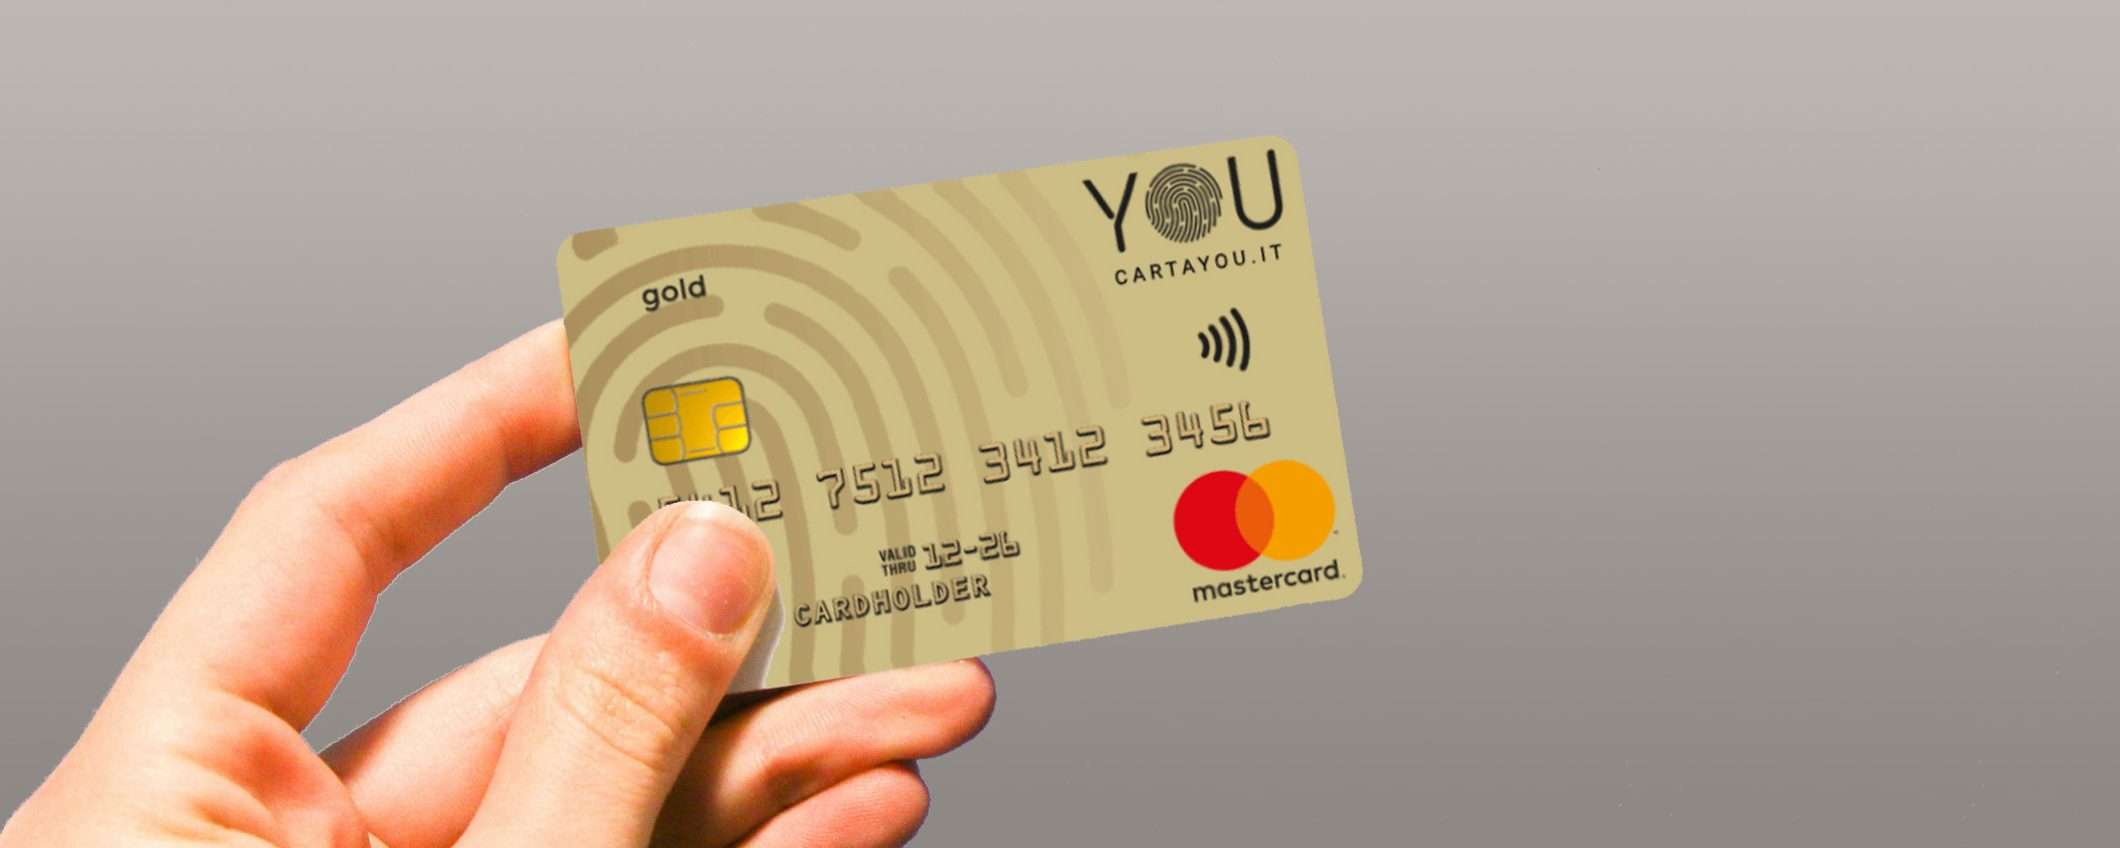 Carta YOU: richiedi la Mastercard Gold senza alcun canone annuale